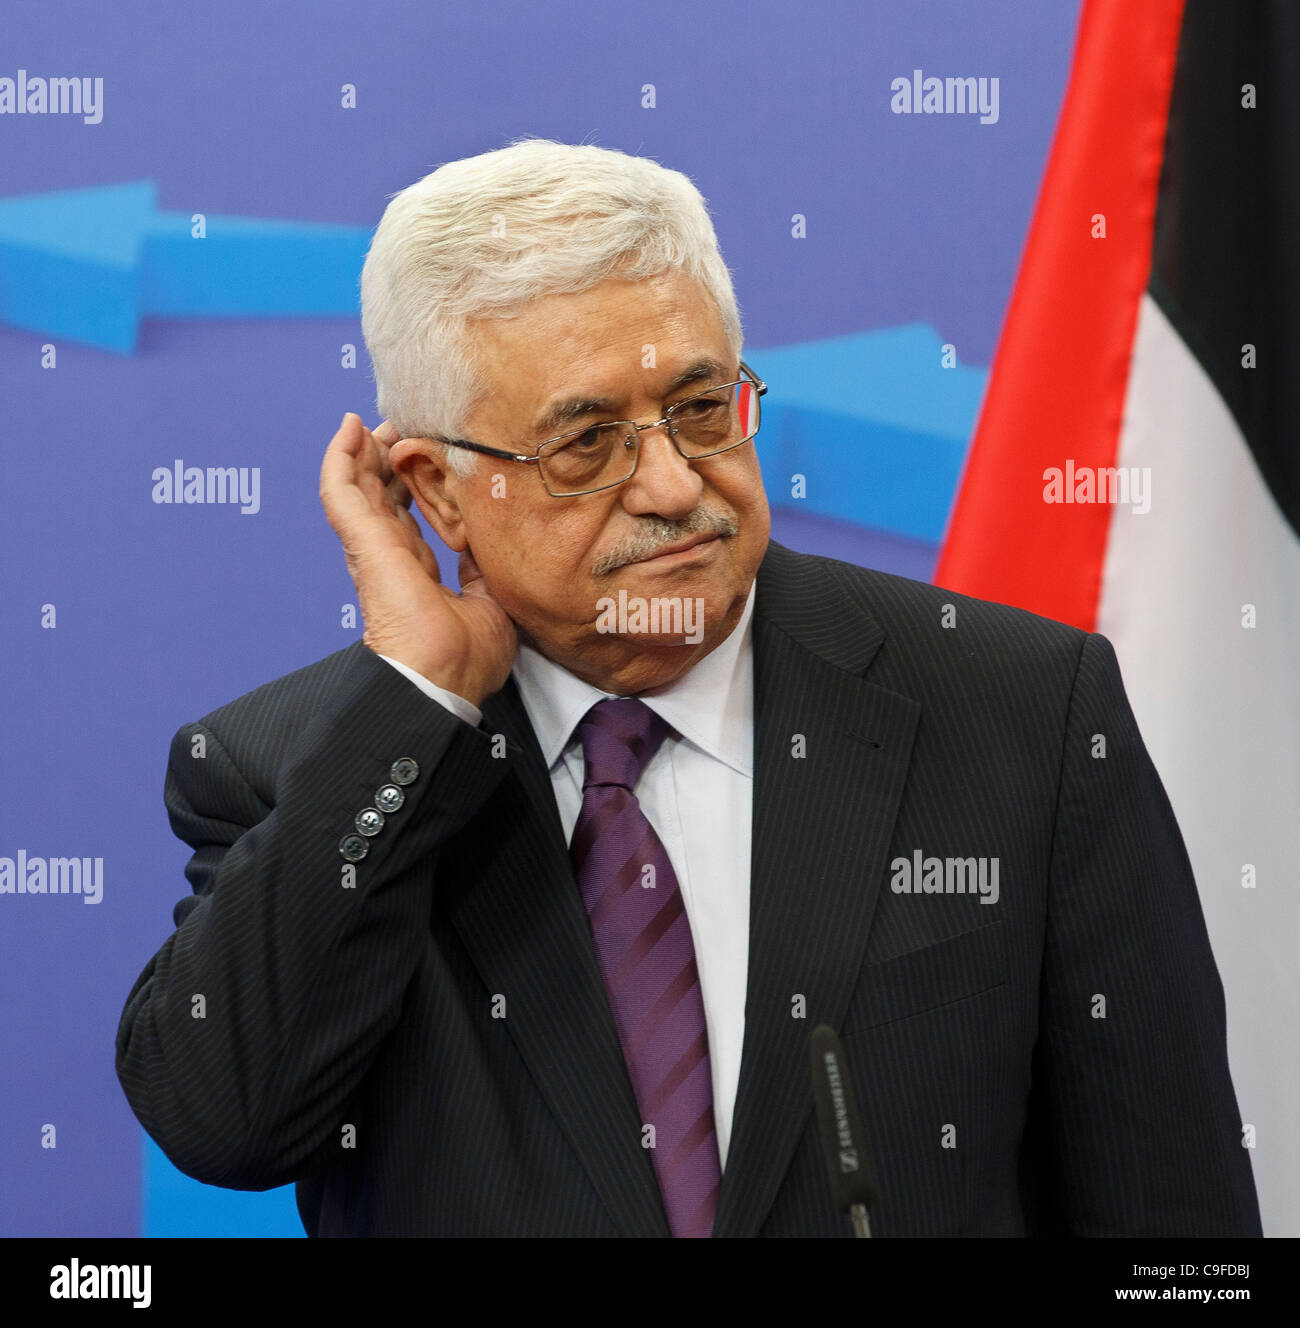 Präsident der palästinensischen Autonomiebehörde, Mahmoud Abbas. Stockfoto